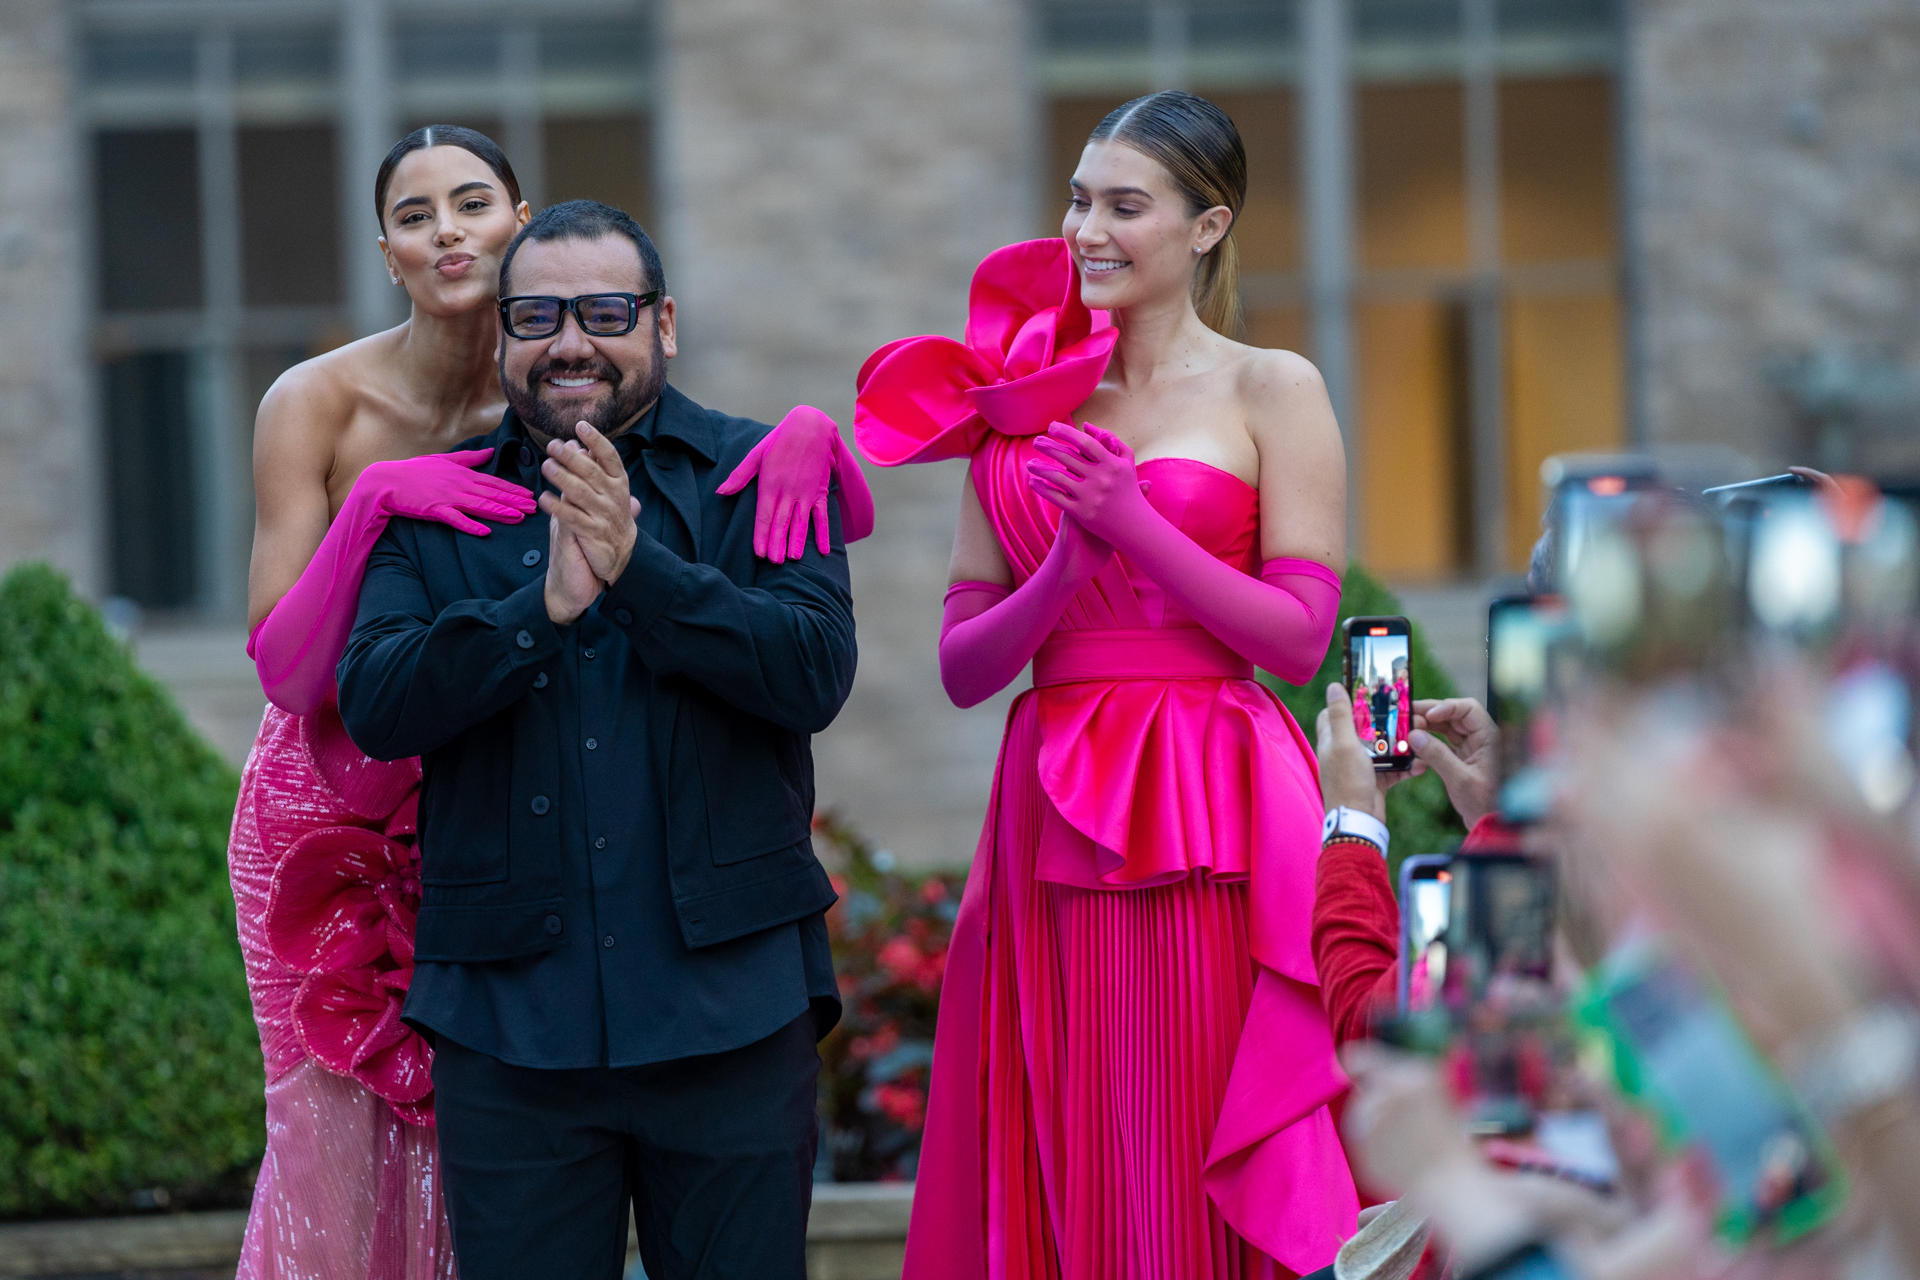 El diseñador mexicano Benito Santos (2d) fue registrado este domingo, 10 de septiembre, acompañado de un par de modelos, luego del desfile de sus creaciones, durante la Semana de la Moda de Nueva York (EE.UU.). EFE/Àngel Colmenares